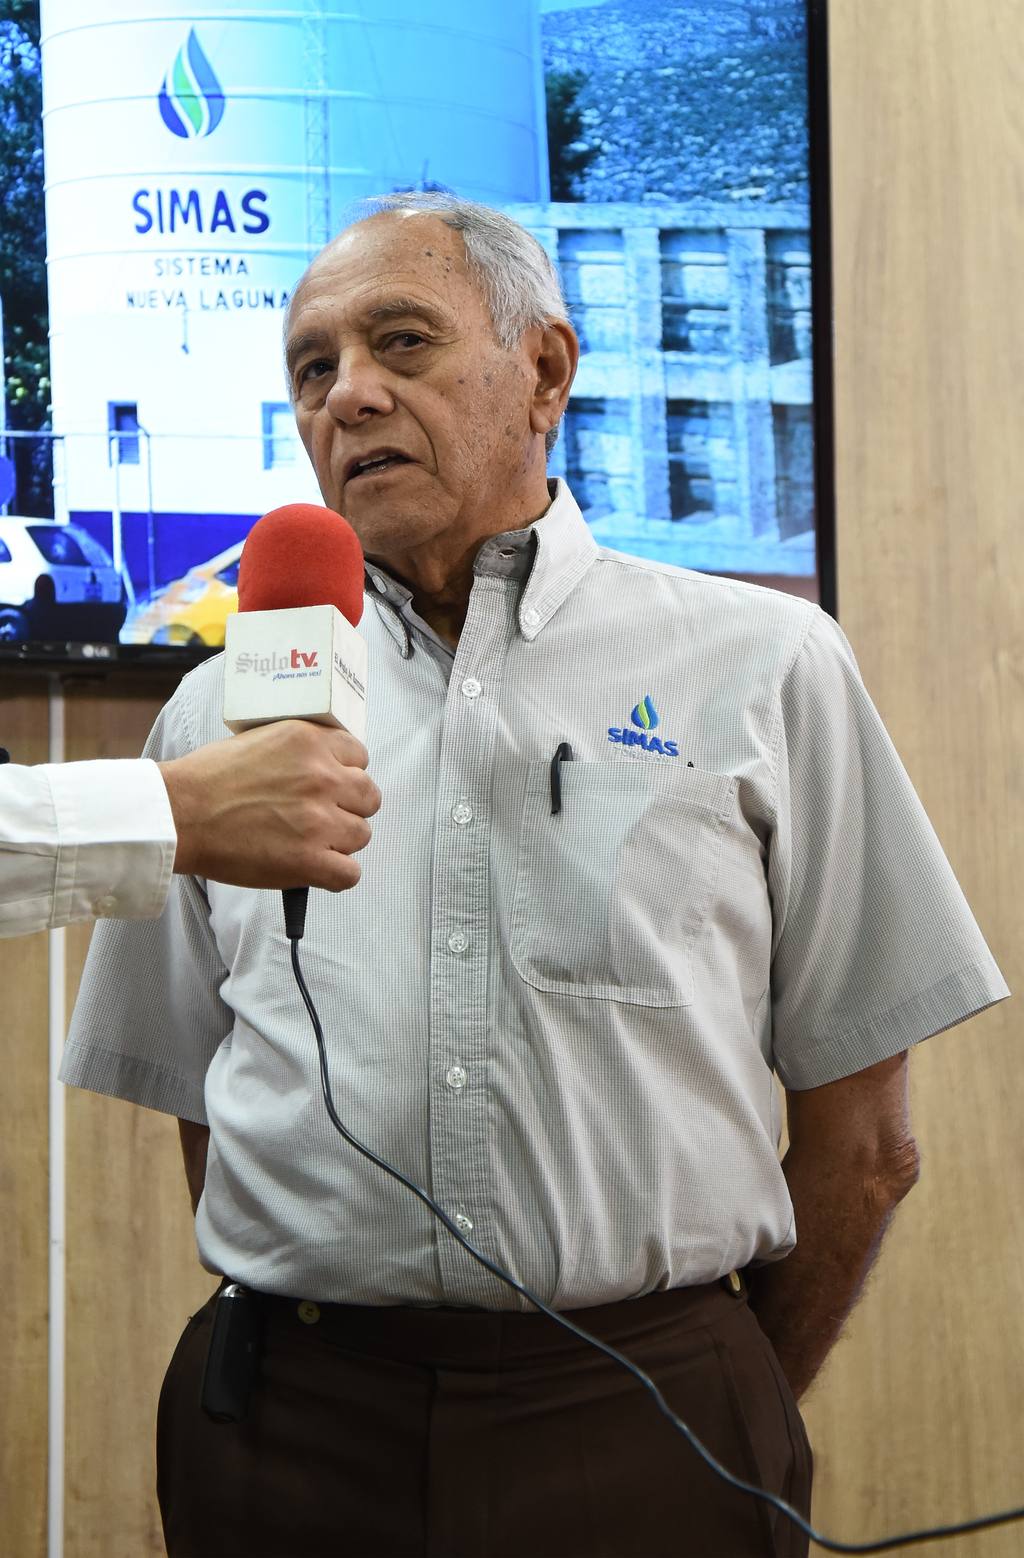 Alza en tarifas, 'como en cualquier empresa', dice gerente general del Simas Torreón